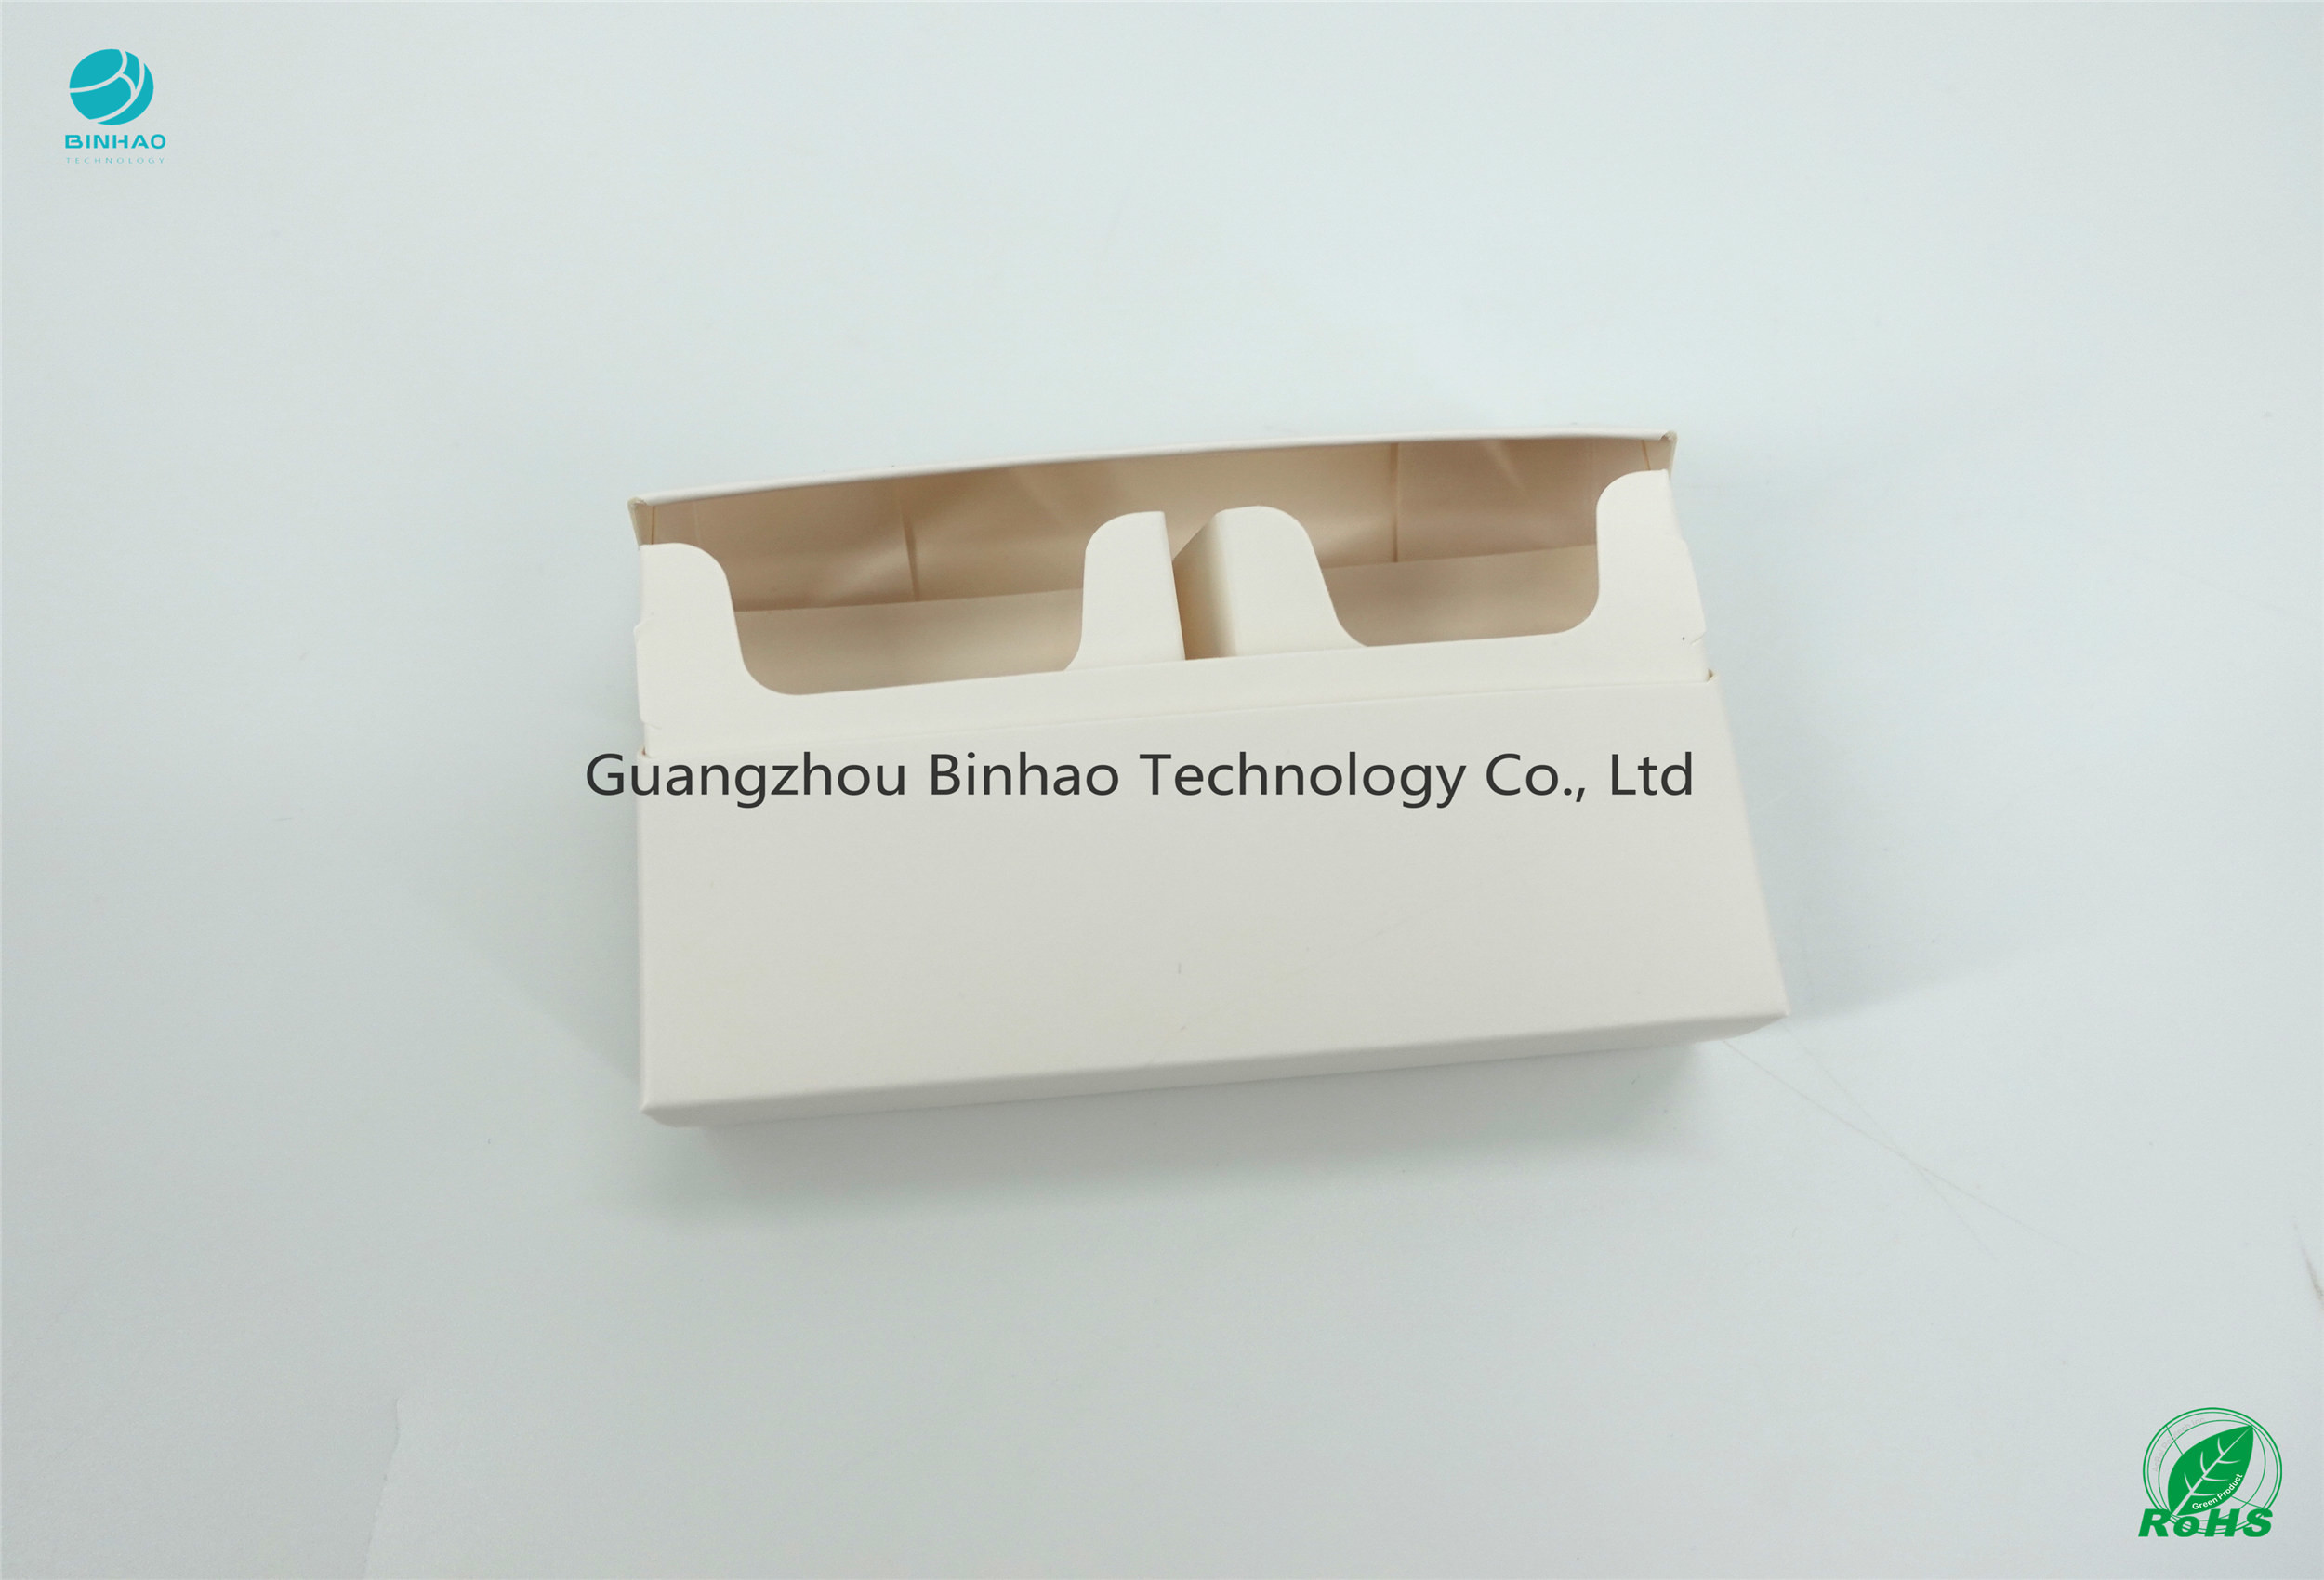 सादे सफेद पेपरबोर्ड 220gsm-230gsm व्याकरण कागज HNB ई-तंबाकू पैकेज सामग्री मामलों की छपाई